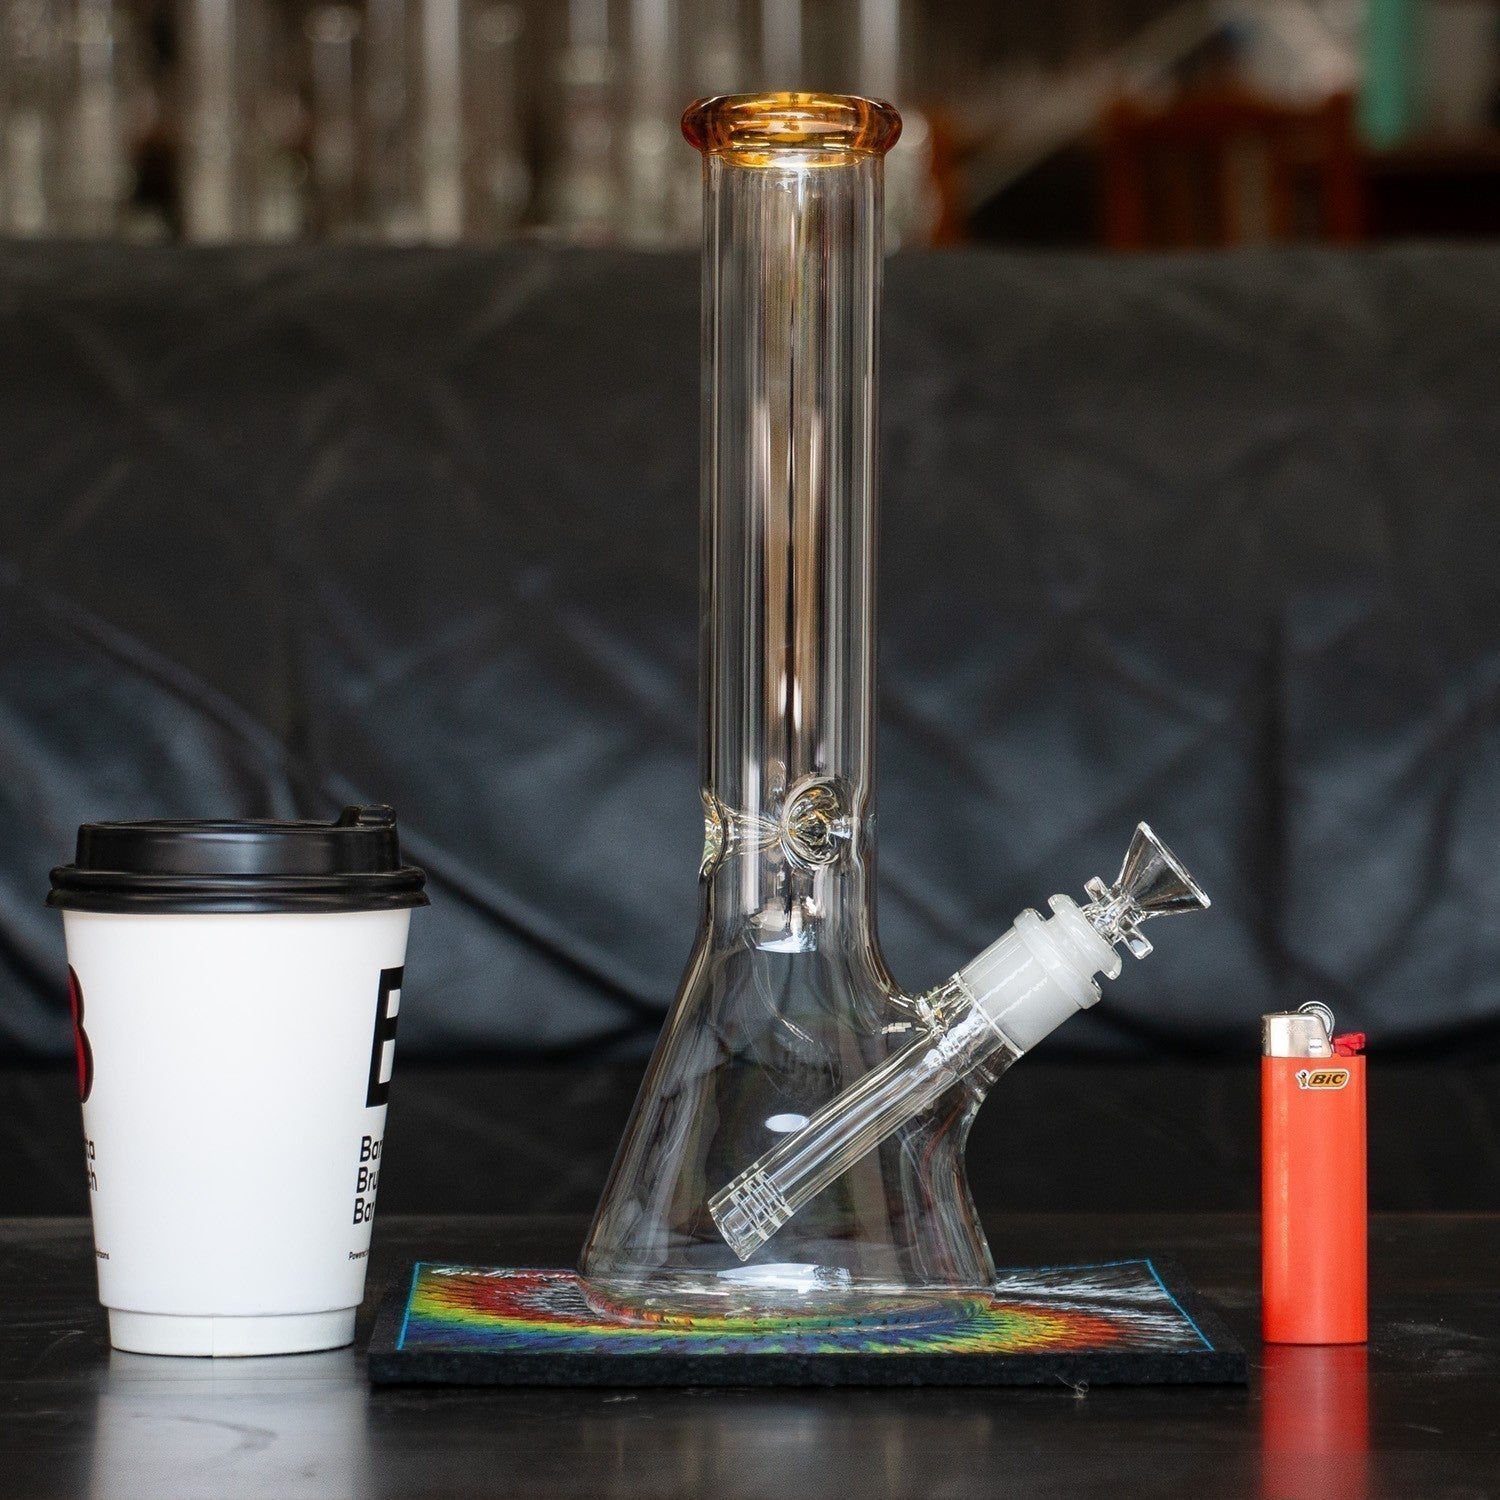 Cheap glass bongs for legal cannabis at Easy shop in Australia.